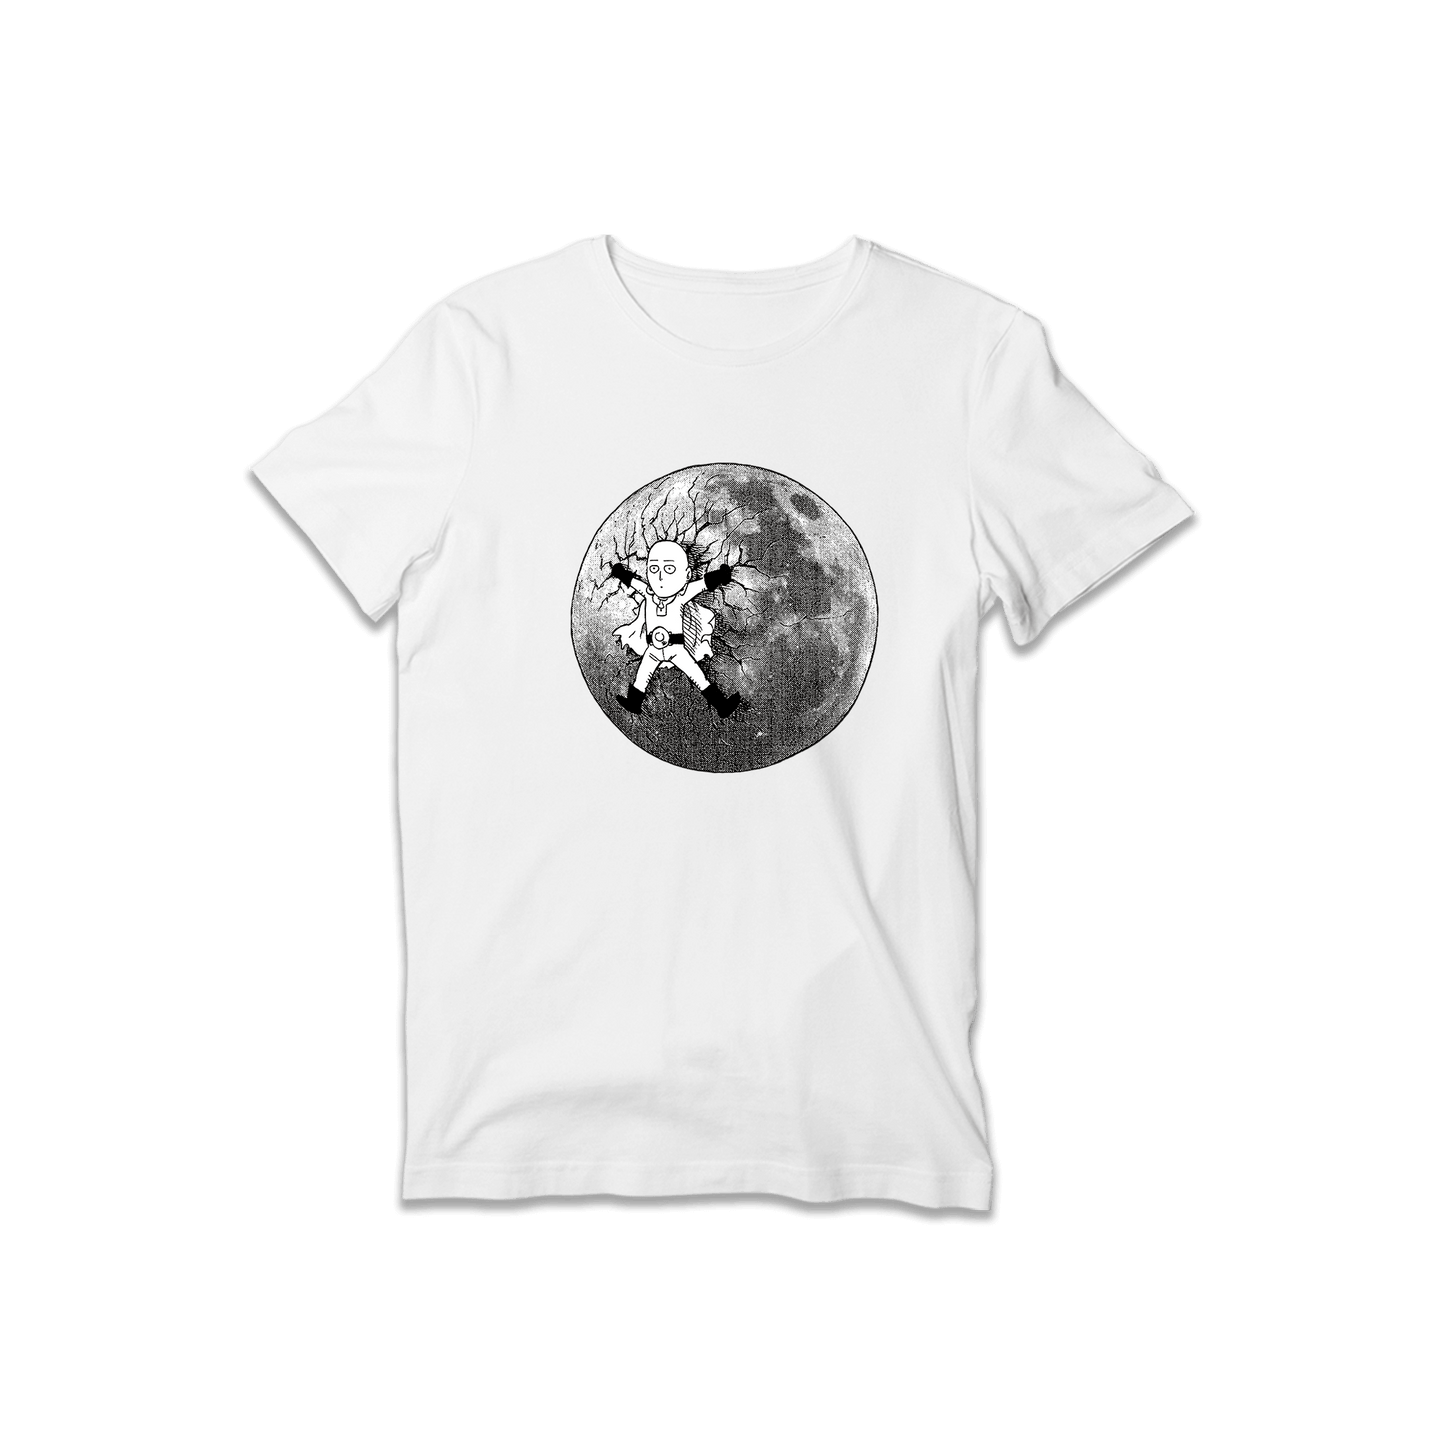 Saitama - OPM T-Shirt